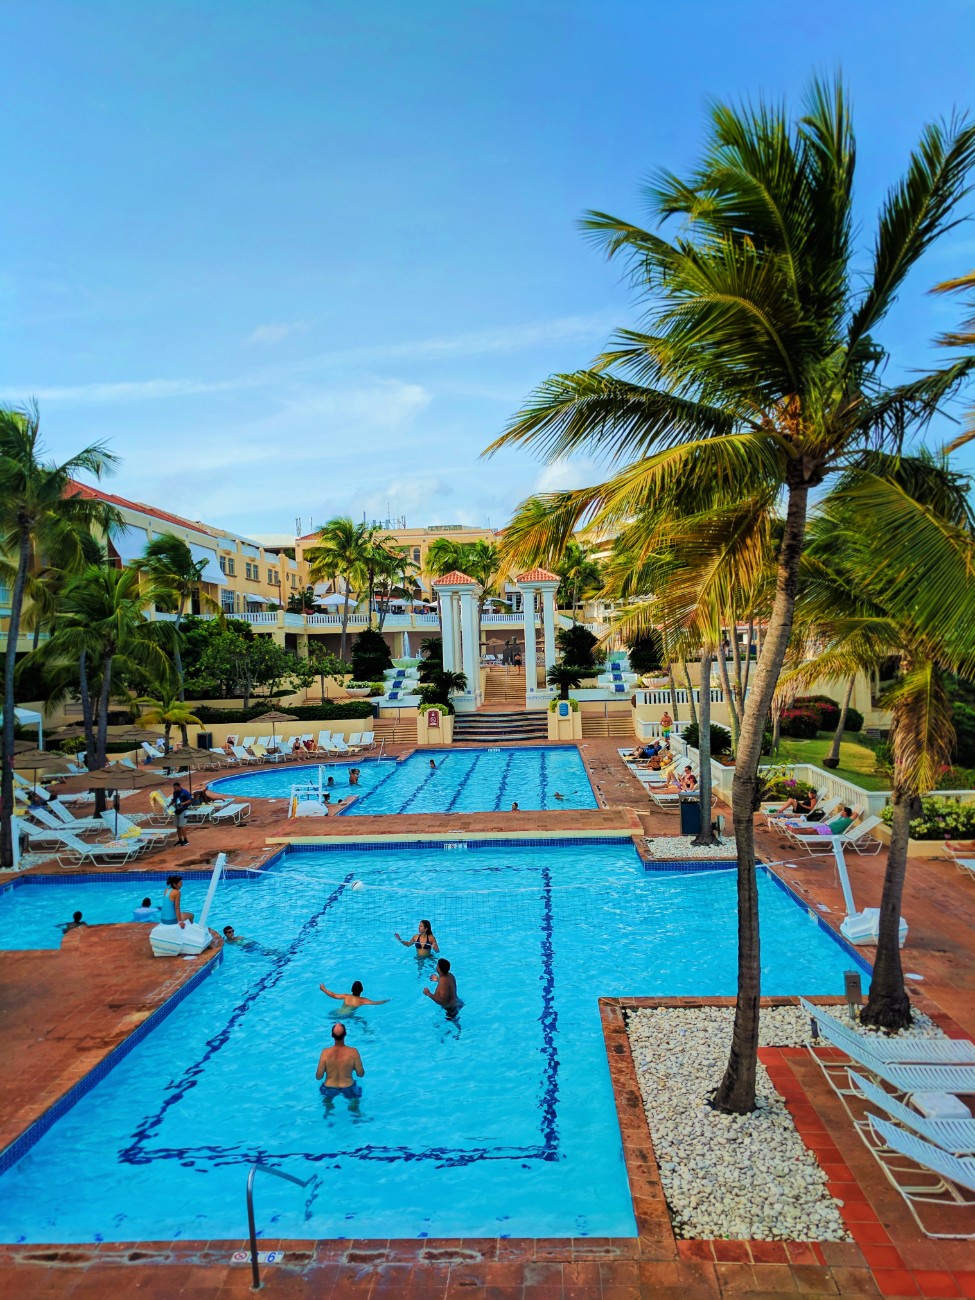 Pools at El Conquistador Resort Puerto Rico 3